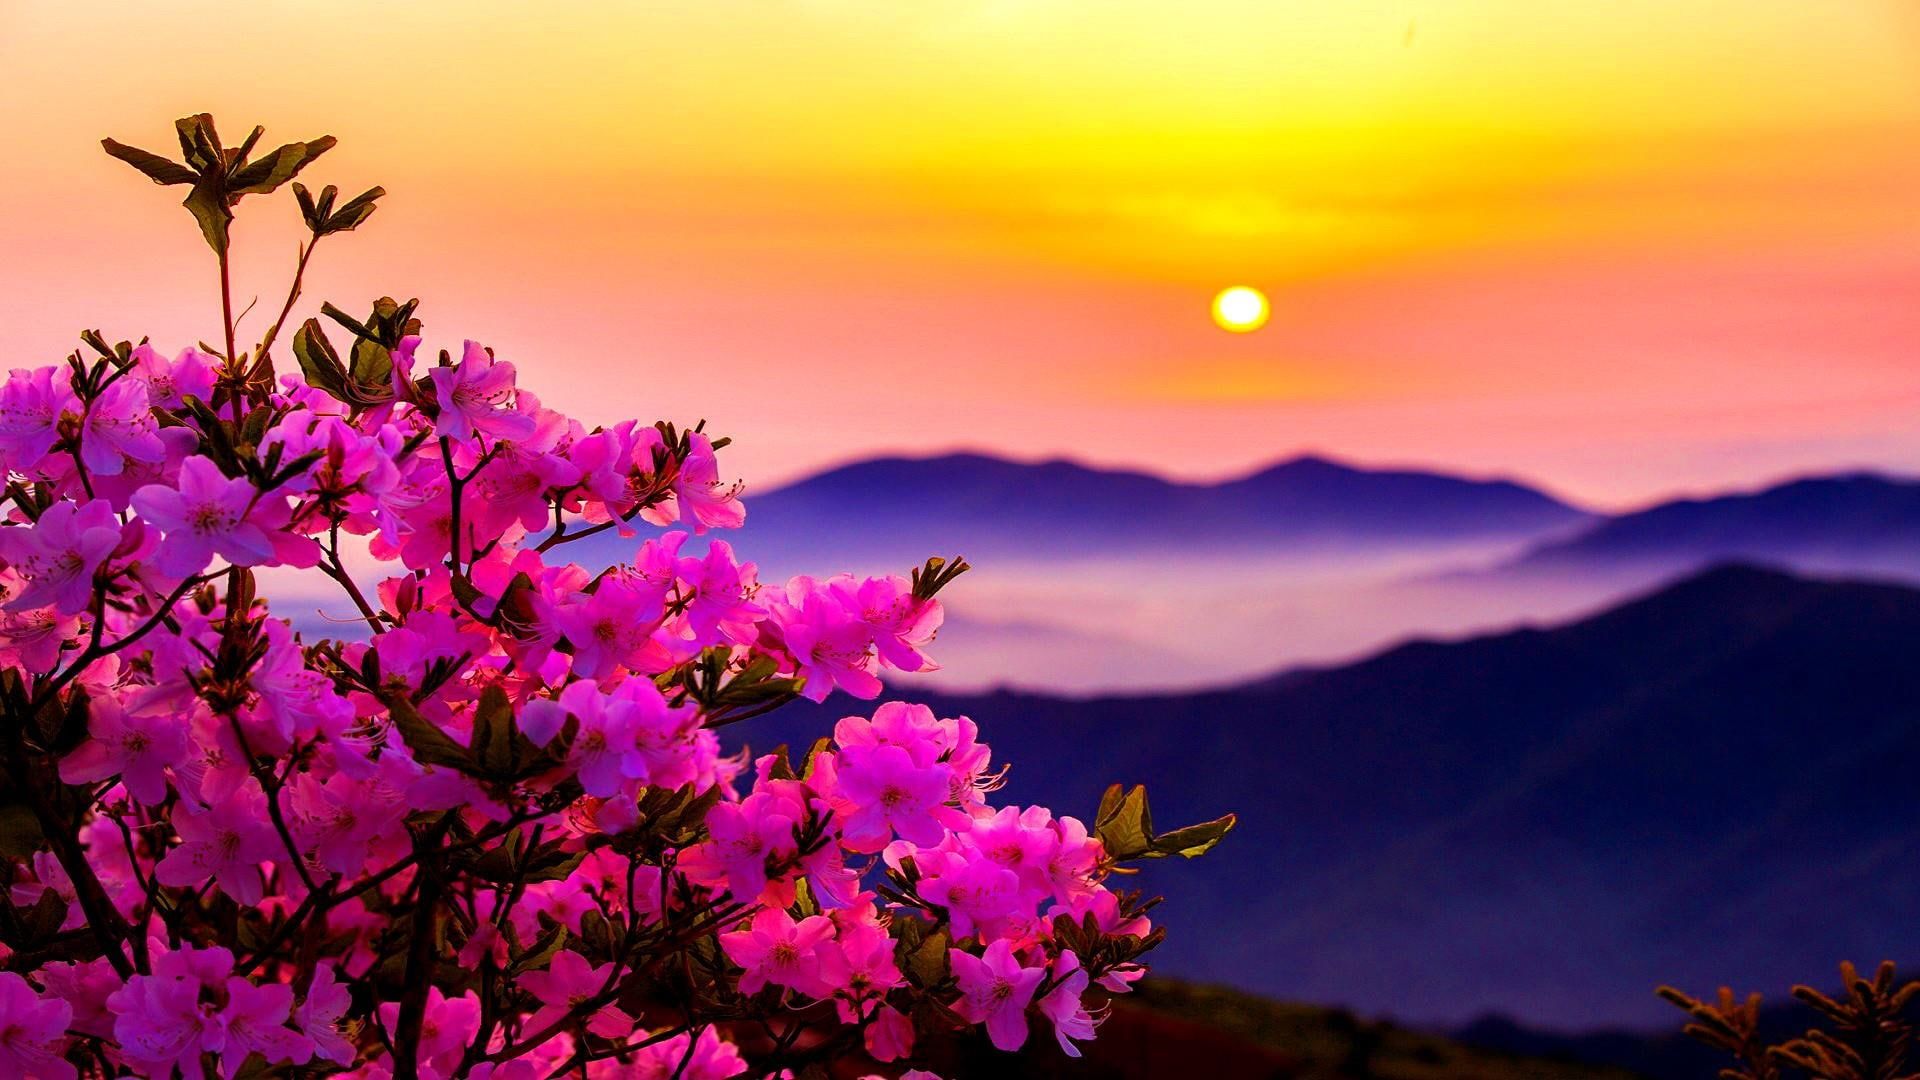 morning #flower #pink #sunset #sun #mountains #flowers P #wallpaper #hdwallpaper #desktop. Sunset, Sunset wallpaper, Beautiful background